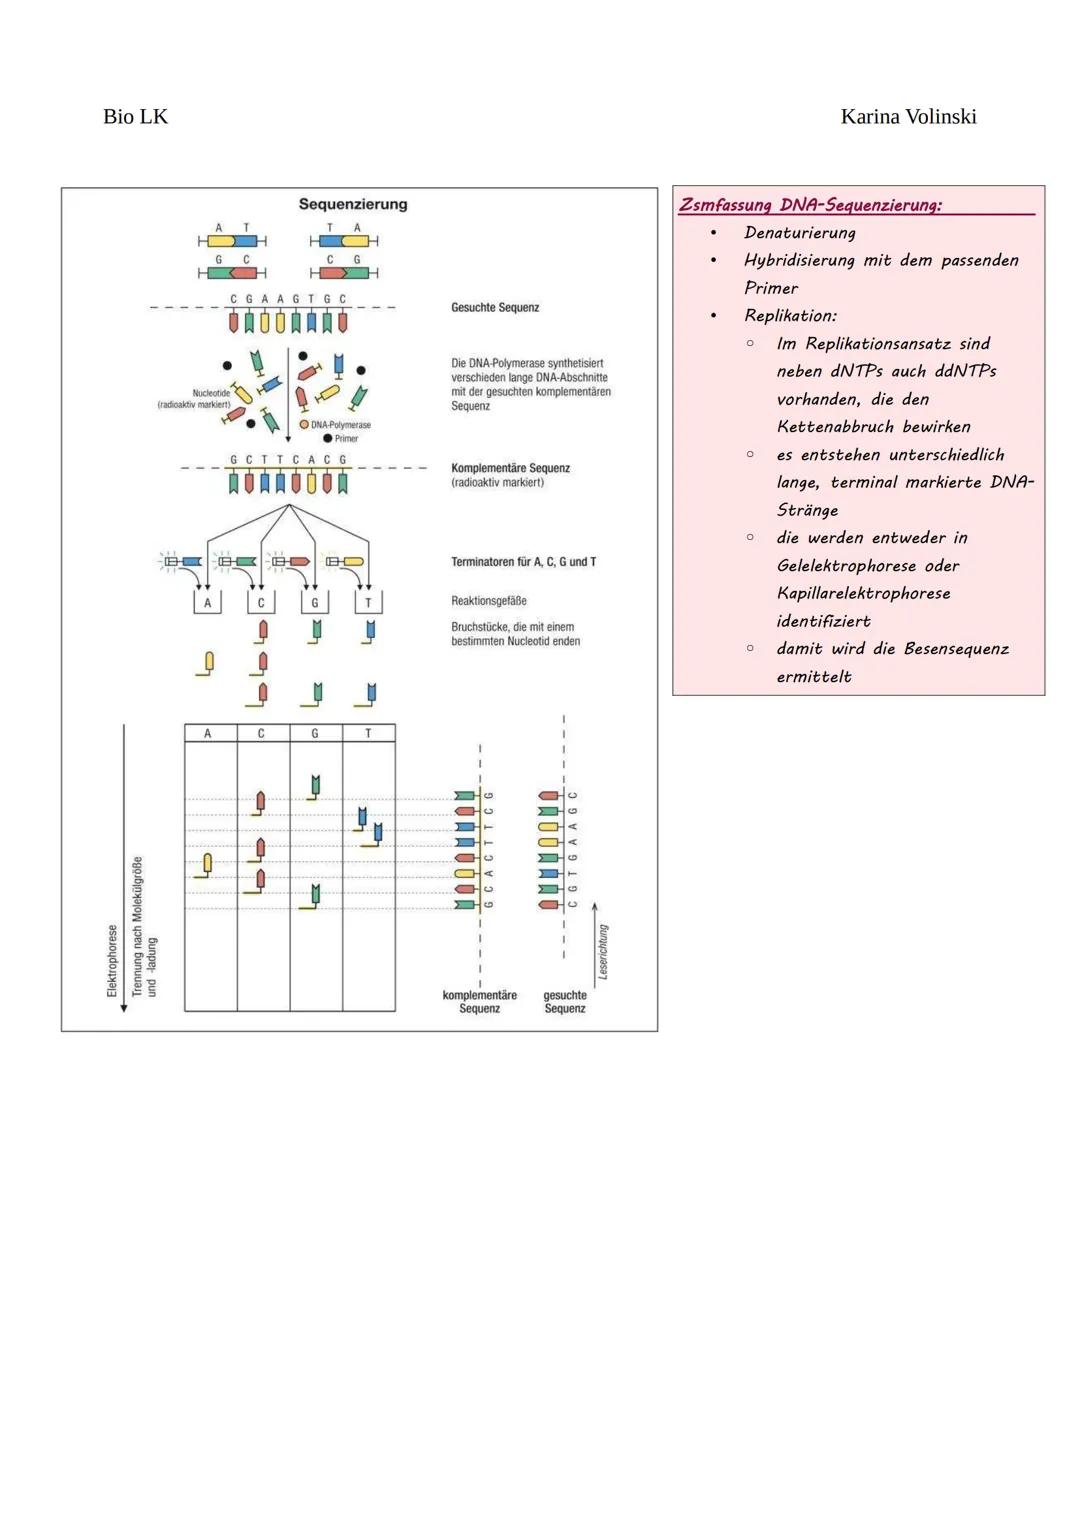 Bio LK
Gentechnik
Gentechnik
●
0 Restriktionsenzyme
●
O
DNA-Klonierung/Selektion von transgenen Bakterien *
O Polymerase-Kettenreaktion (PCR